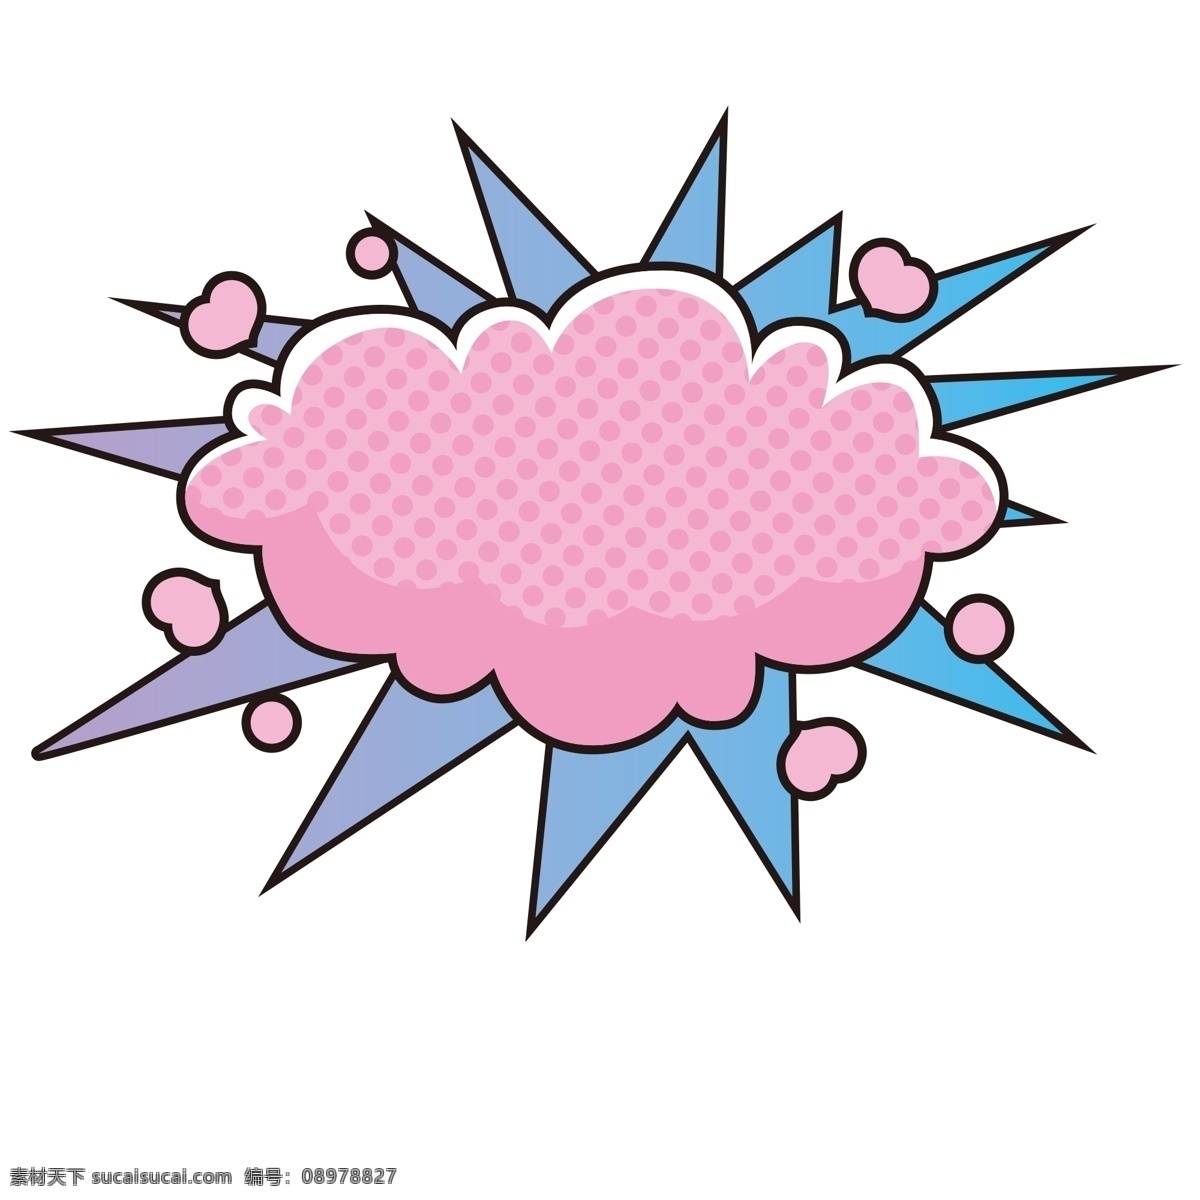 手绘 装饰 粉色 爆炸 云 手绘爆炸团 蓝色爆炸线 广告 背景 卡通爆炸云 文本爆炸云 插画